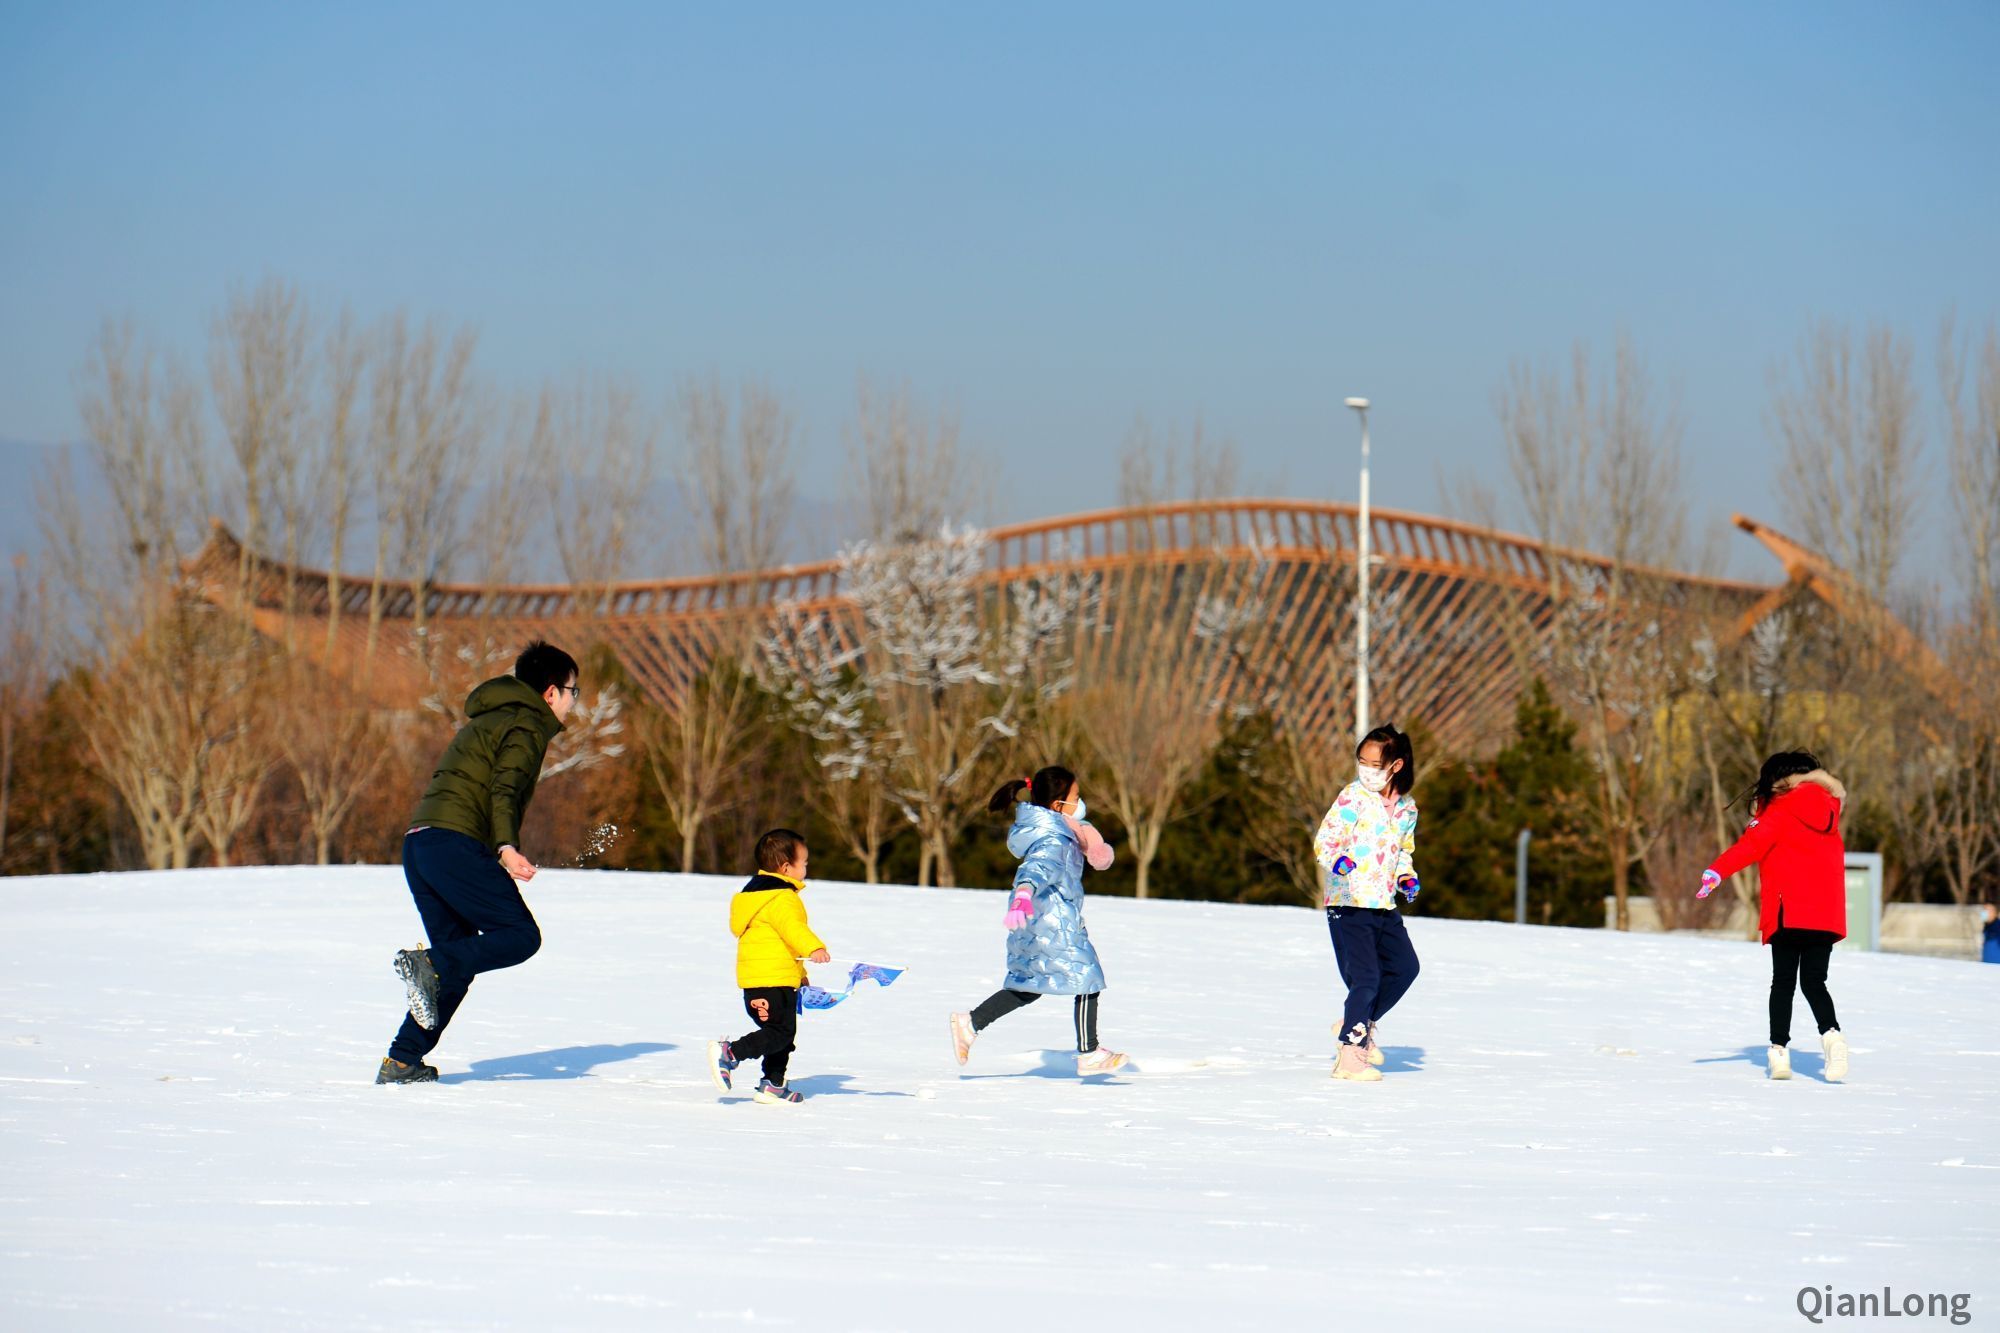 镜记冬奥|畅游最美冬奥城 北京延庆滑冰戏雪消费季邀您来“撒欢儿”